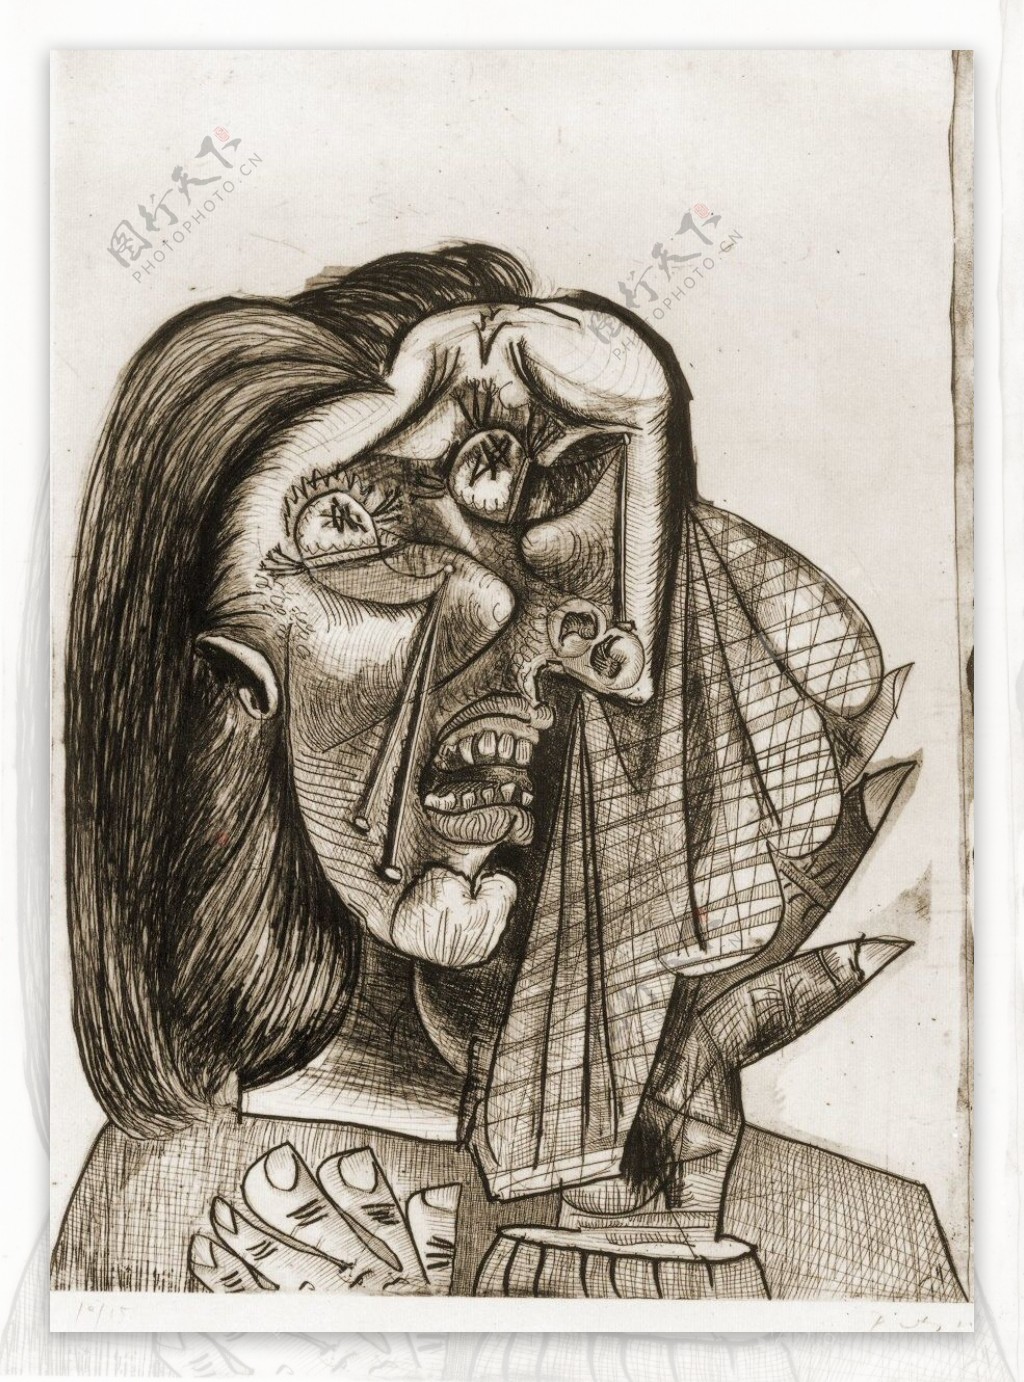 1937LafemmequipleureIVI西班牙画家巴勃罗毕加索抽象油画人物人体油画装饰画